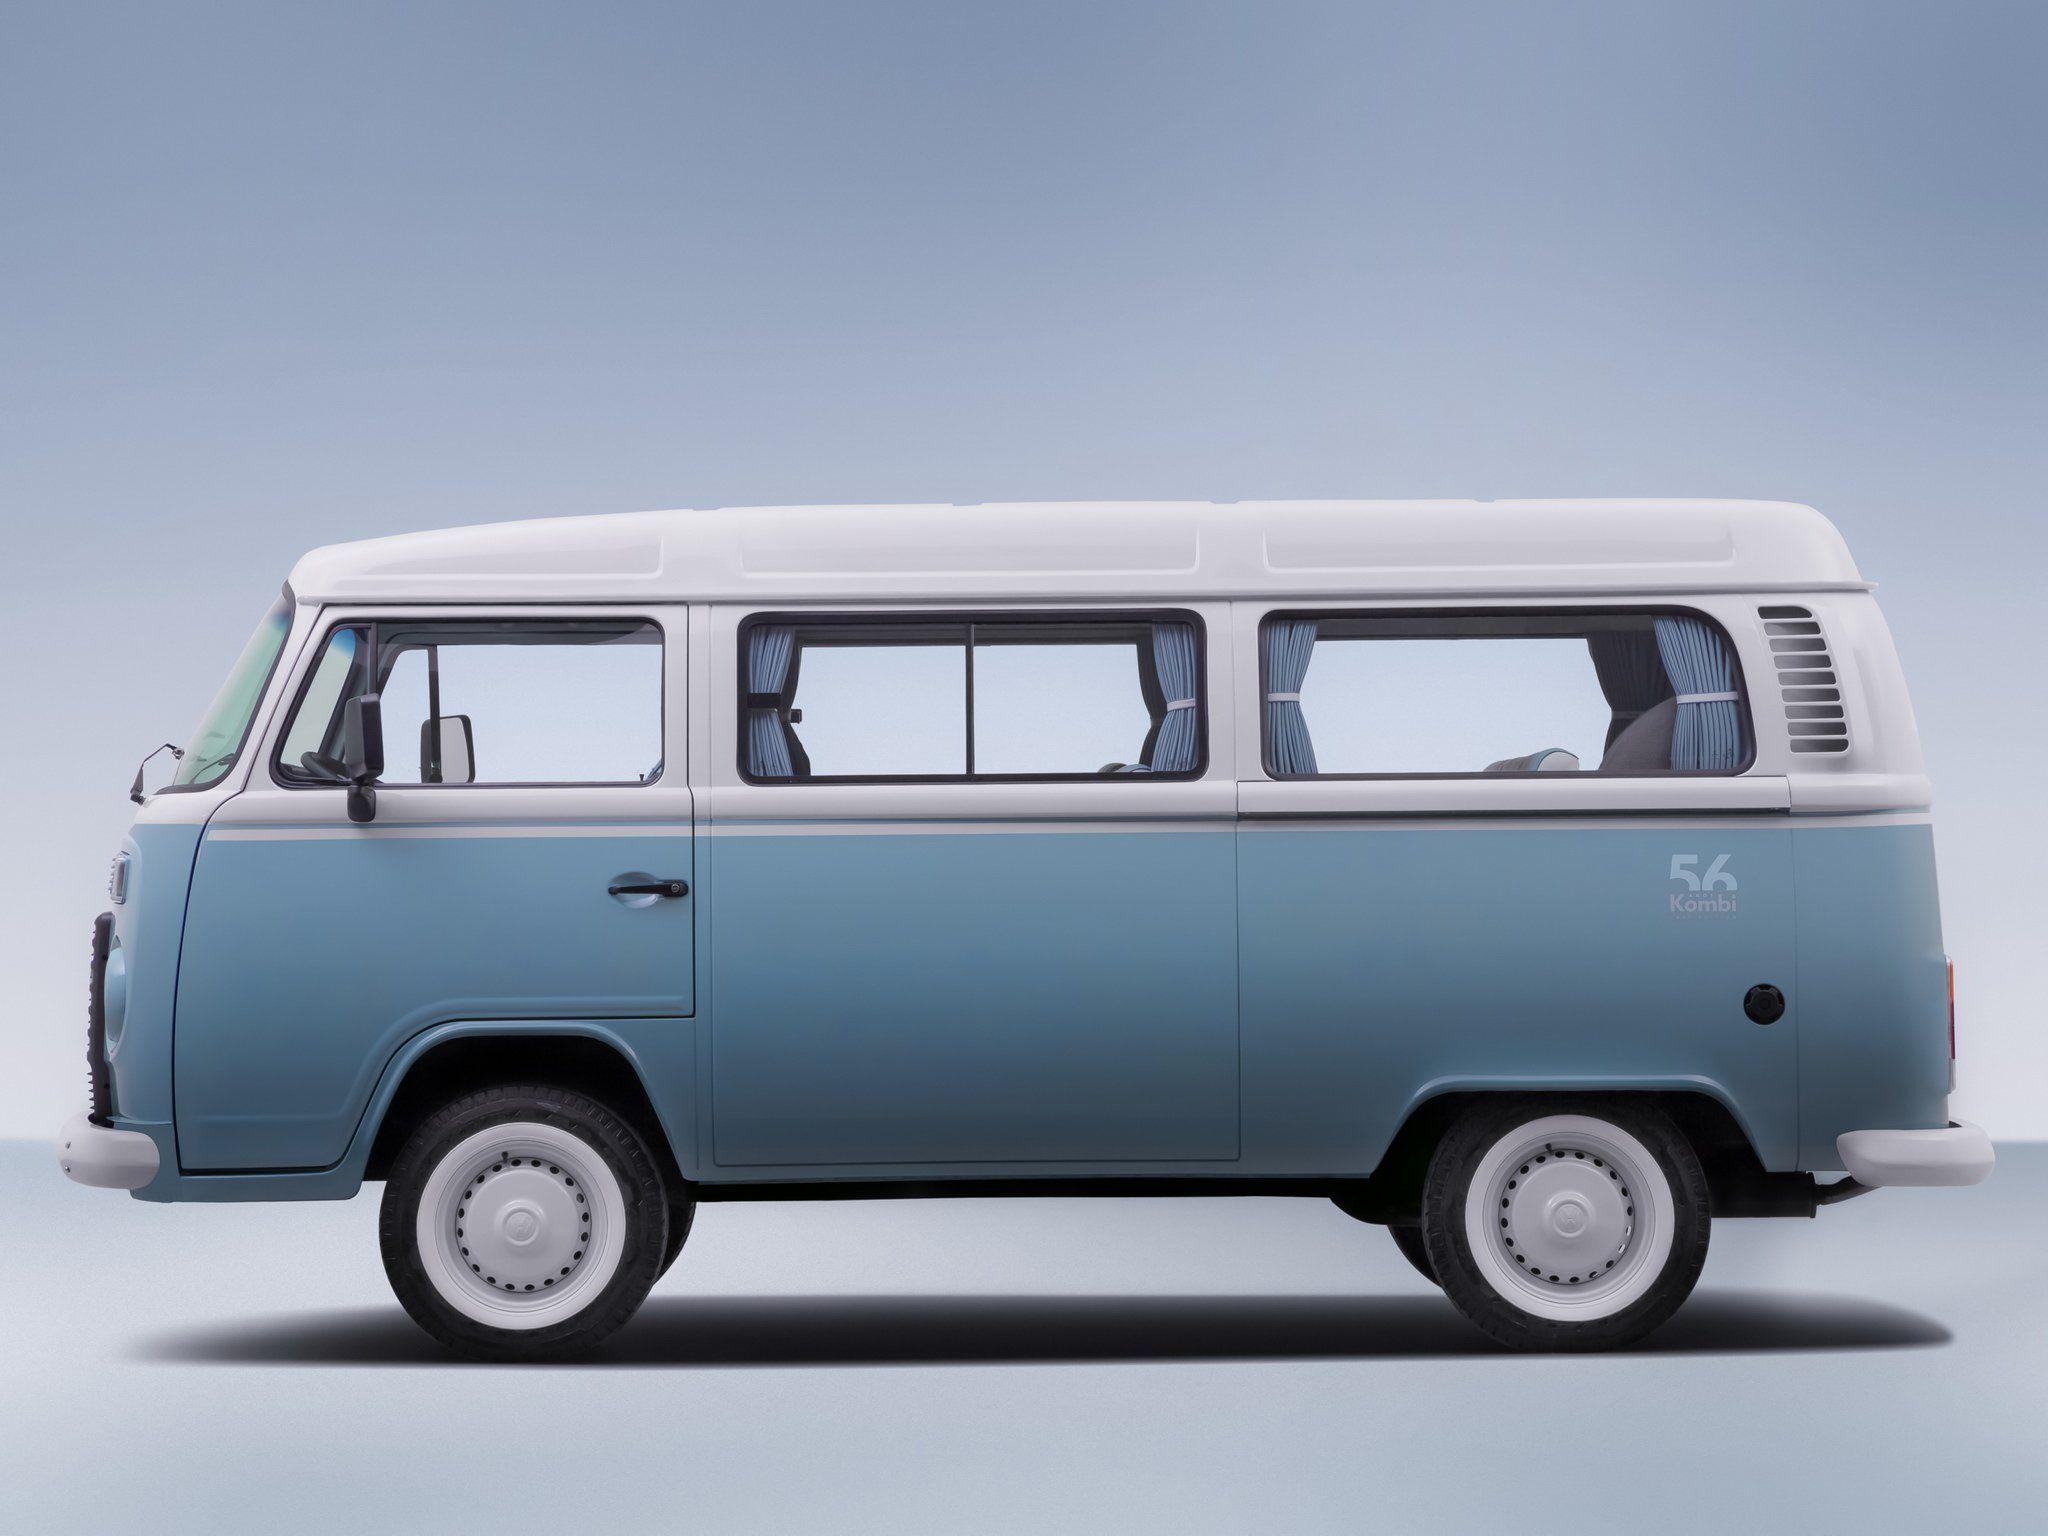 Volkswagen Kombi Last Edition bus van ey wallpaper